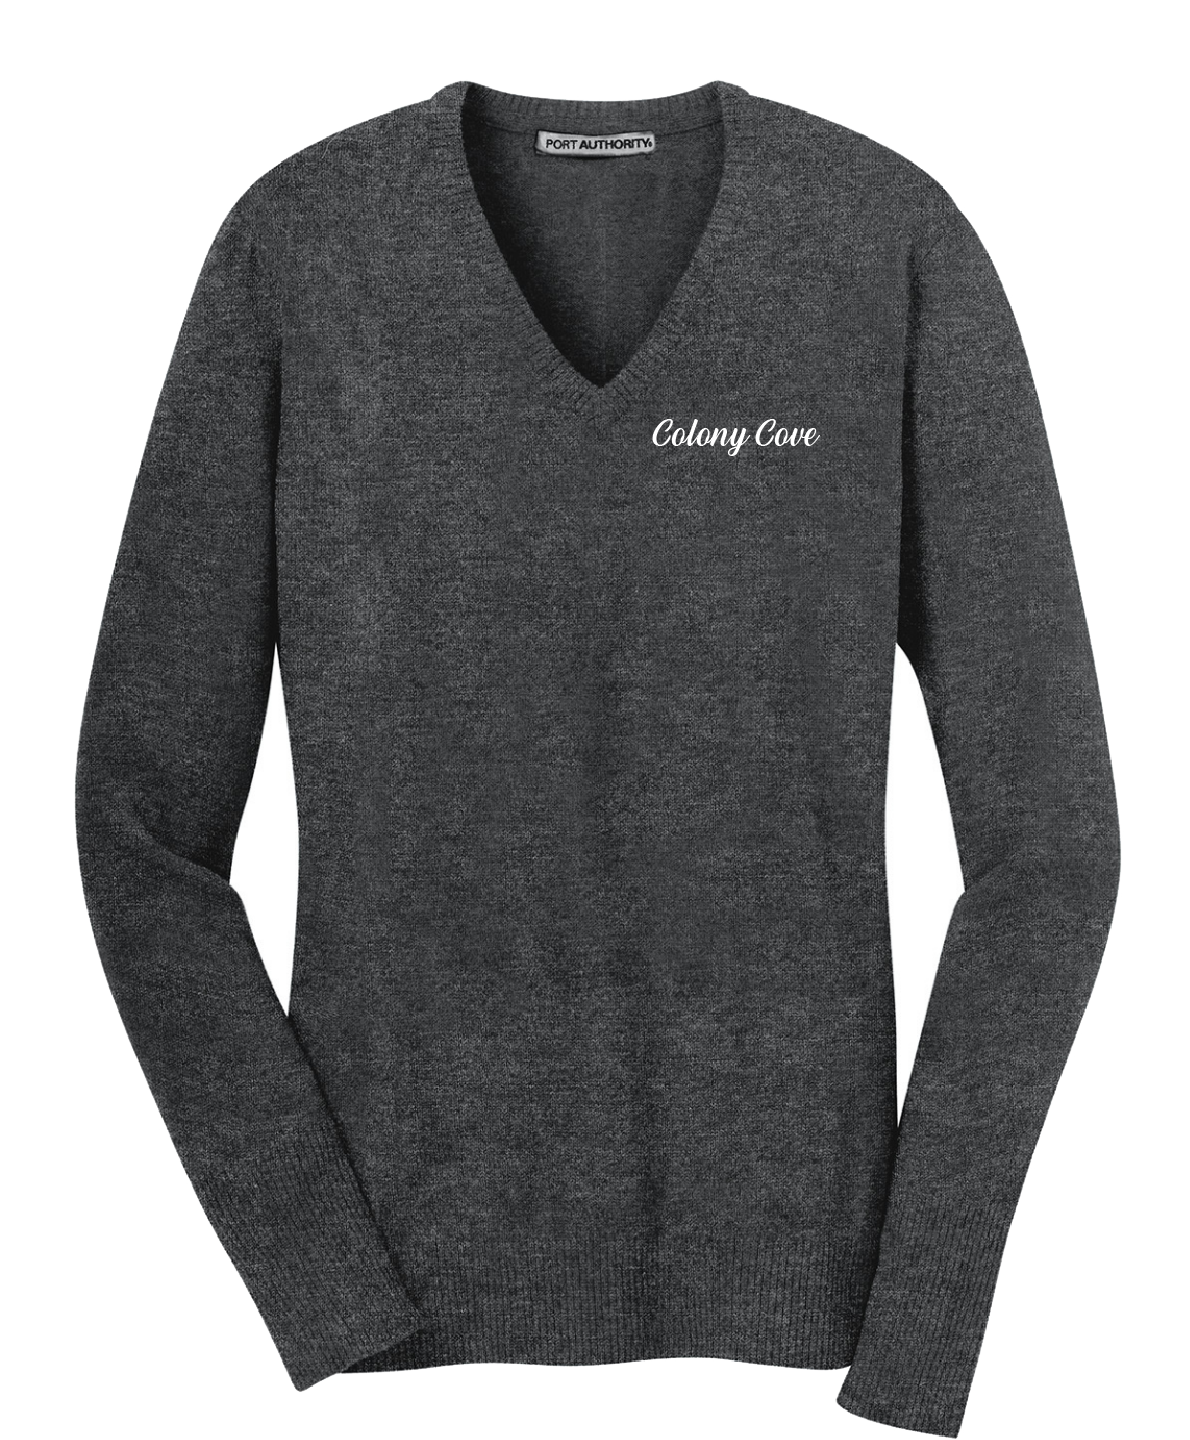 Colony Cove - Port Authority® Ladies V-Neck Sweater